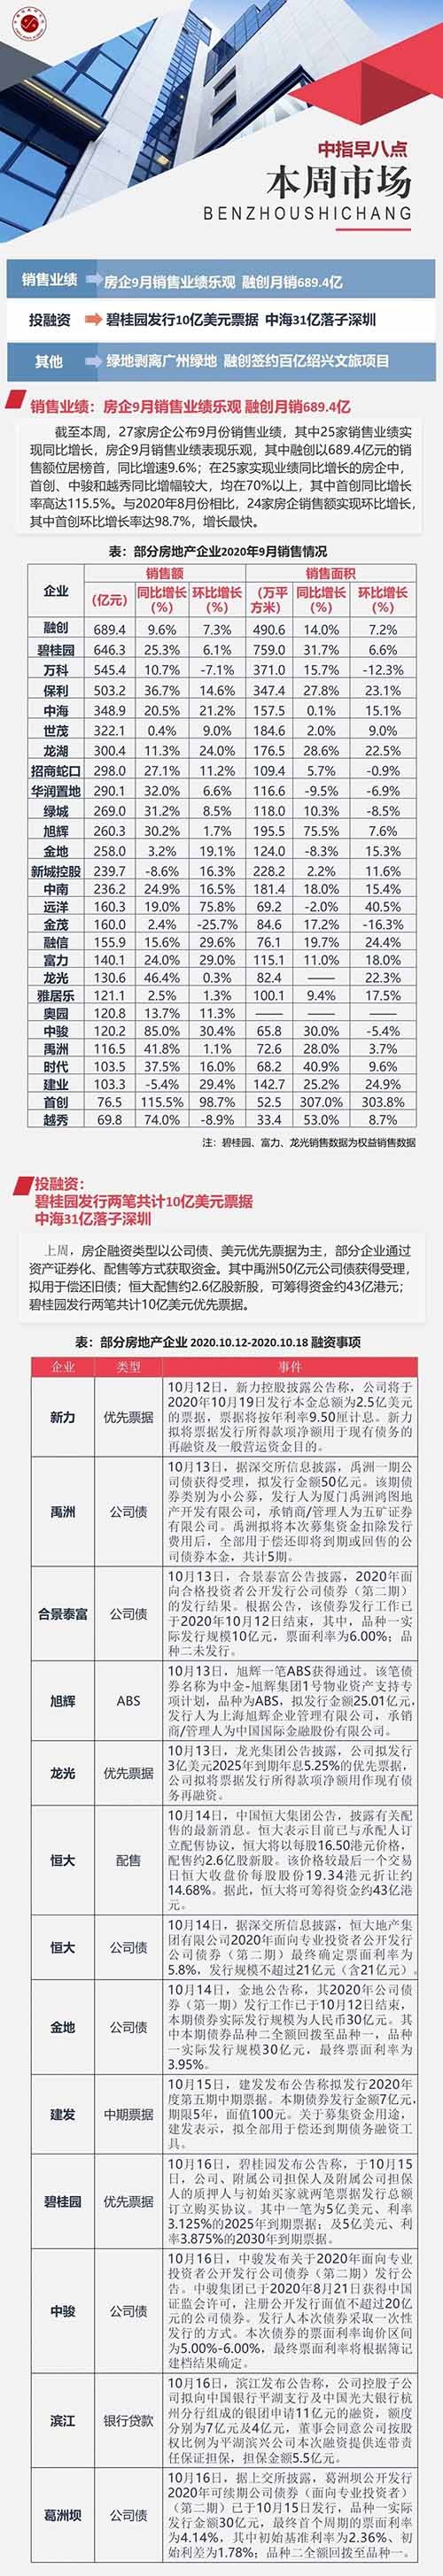 企业：房企9月销售业绩乐观 融创月销689.4亿 中海31亿落子深圳